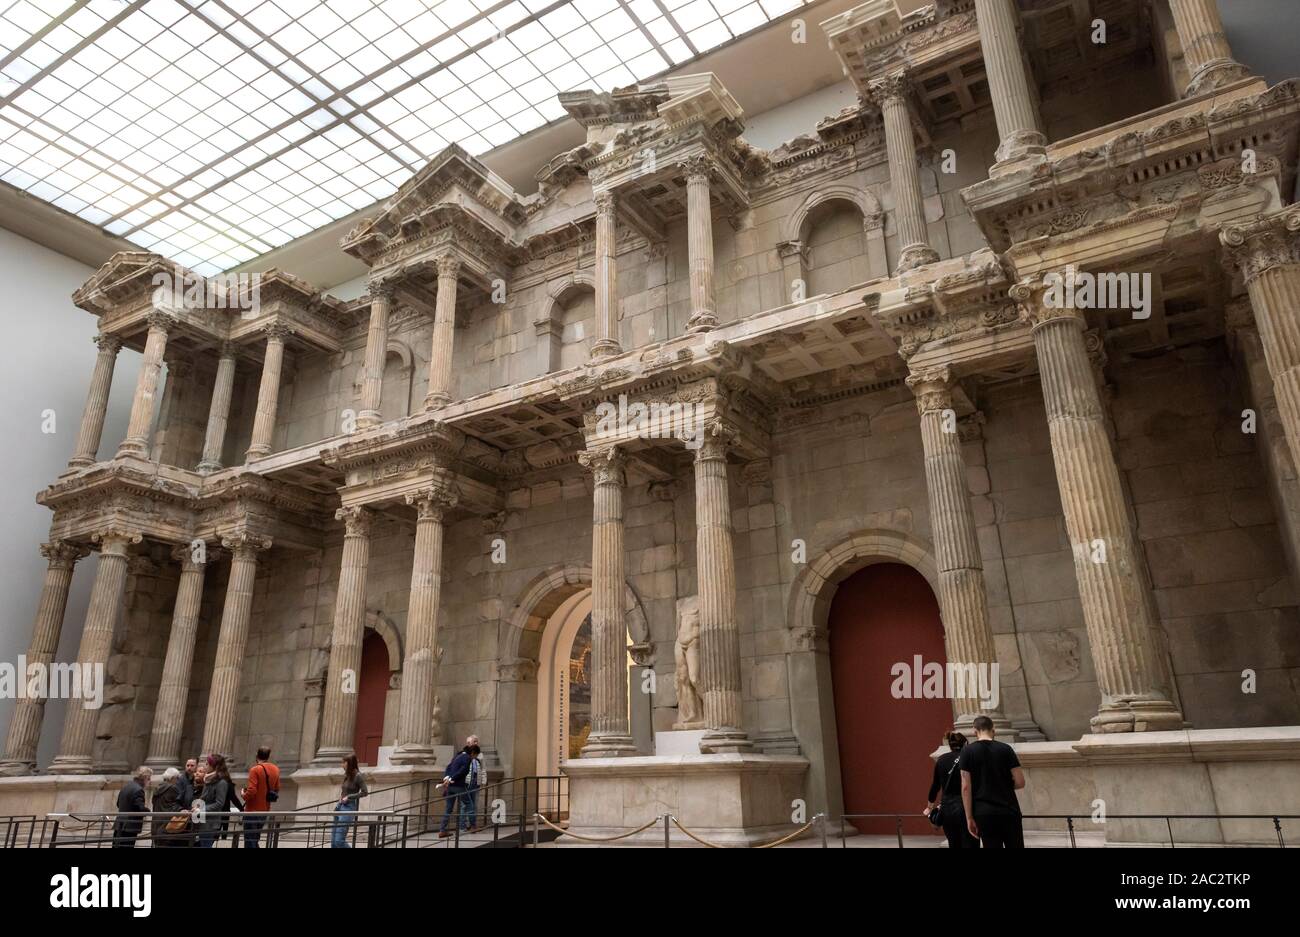 La porte du marché de Milet au Musée Pergamon de Berlin, Allemagne Banque D'Images